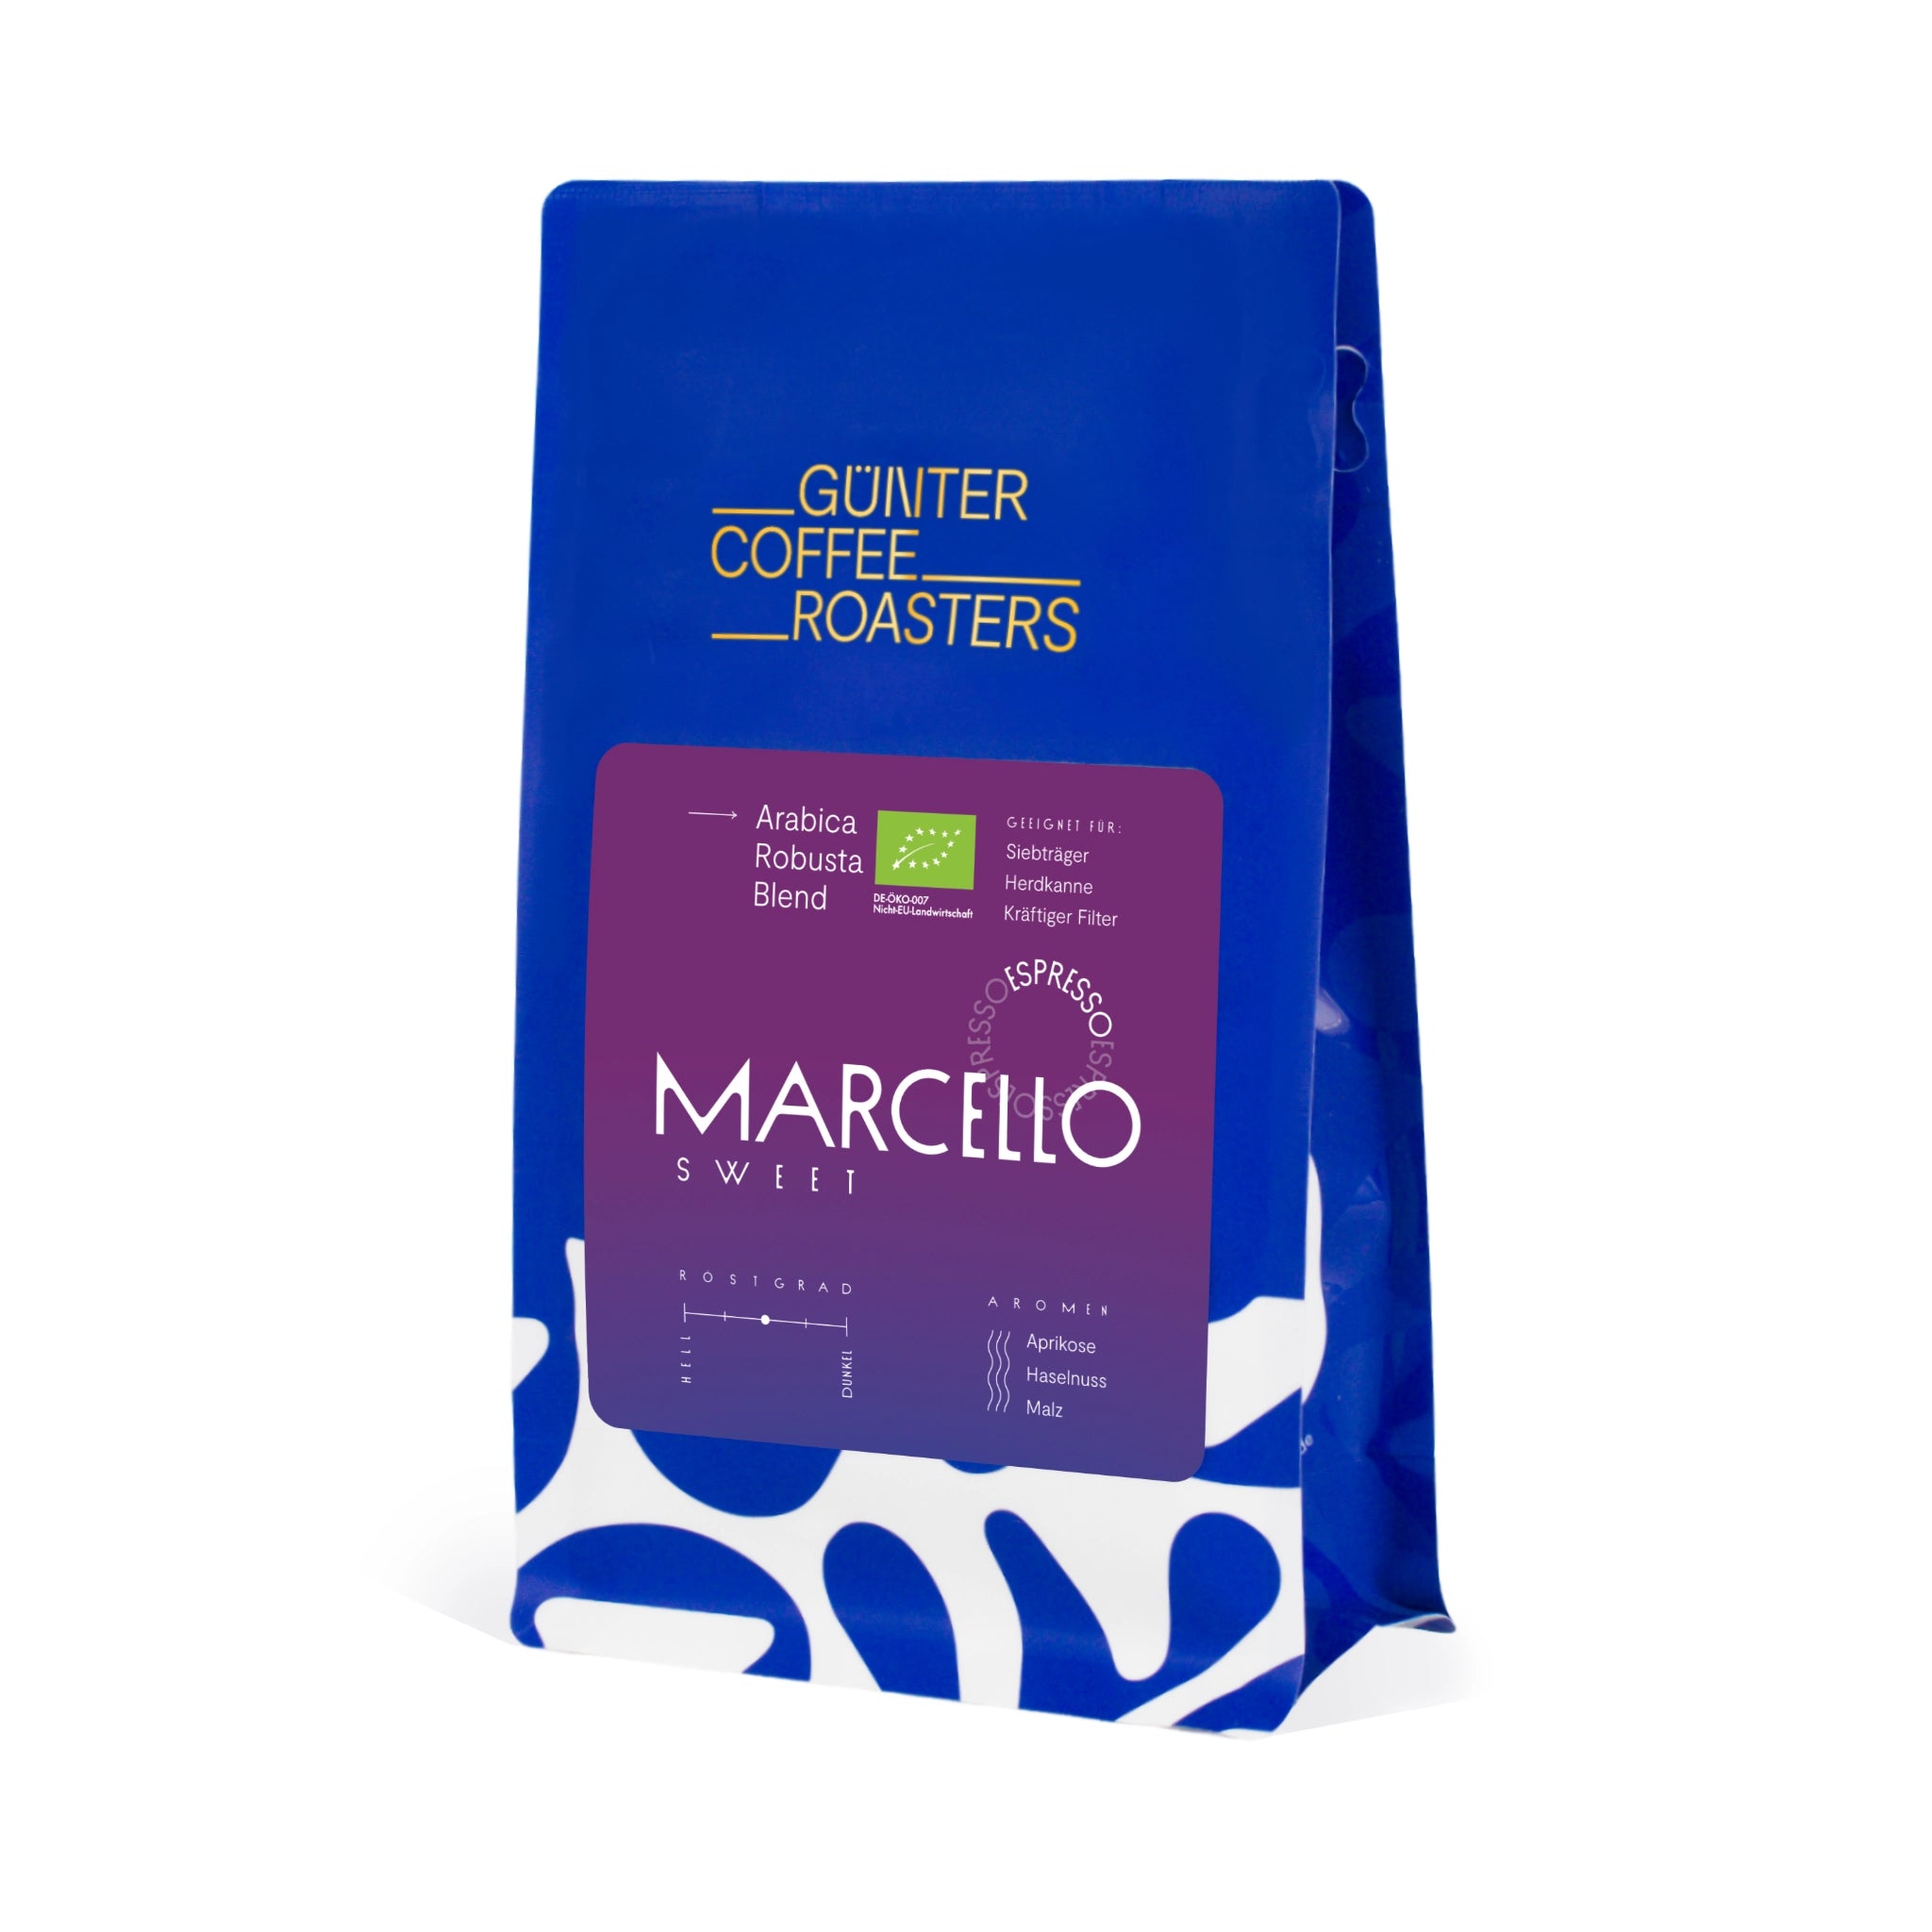 Produktverpackung Marcello Sweet Kaffeebohnen aus Indien, Peru und Brasilien für die Zubereitung als Espresso. Noten von Aprikose, Haselnuss und Malz. Röstgrad 3 von 5. Arabica-Robusta-Blend. Geeignet für Siebträger, Herdkanne oder als kräftiger Filter.